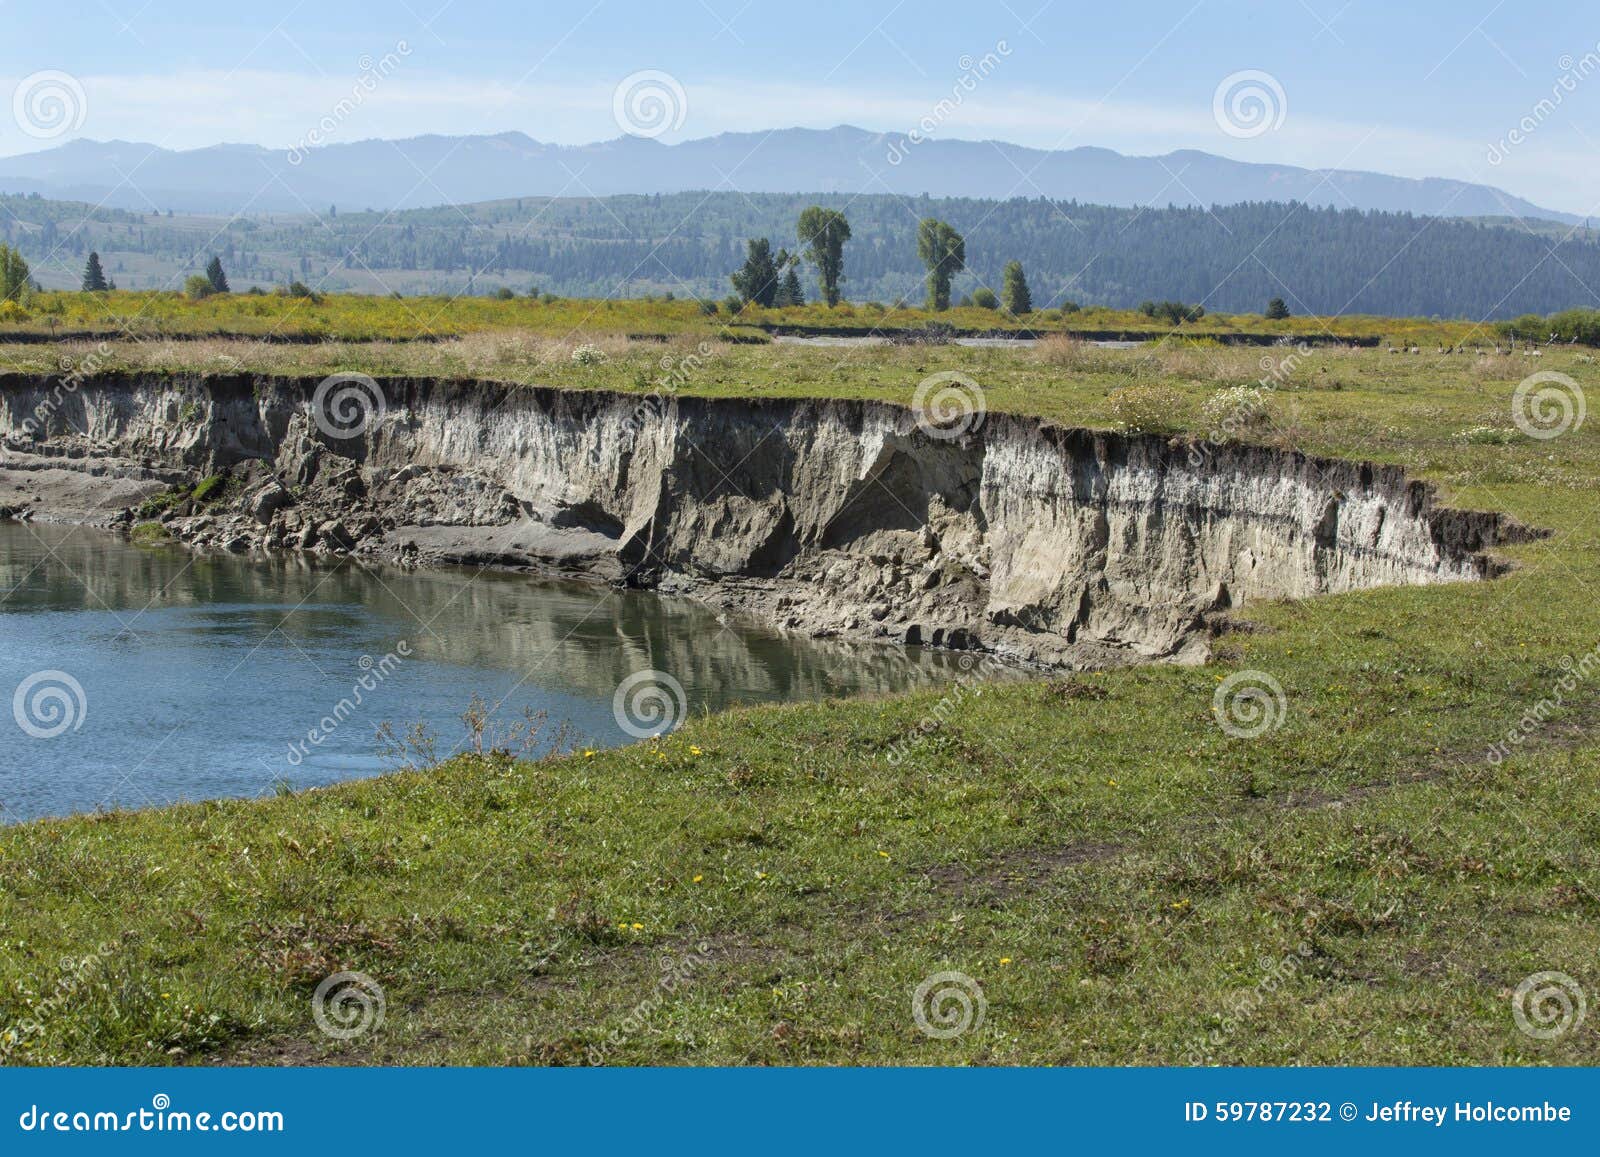 bank erosion, pasture along buffalo fork river, moran, wyoming.